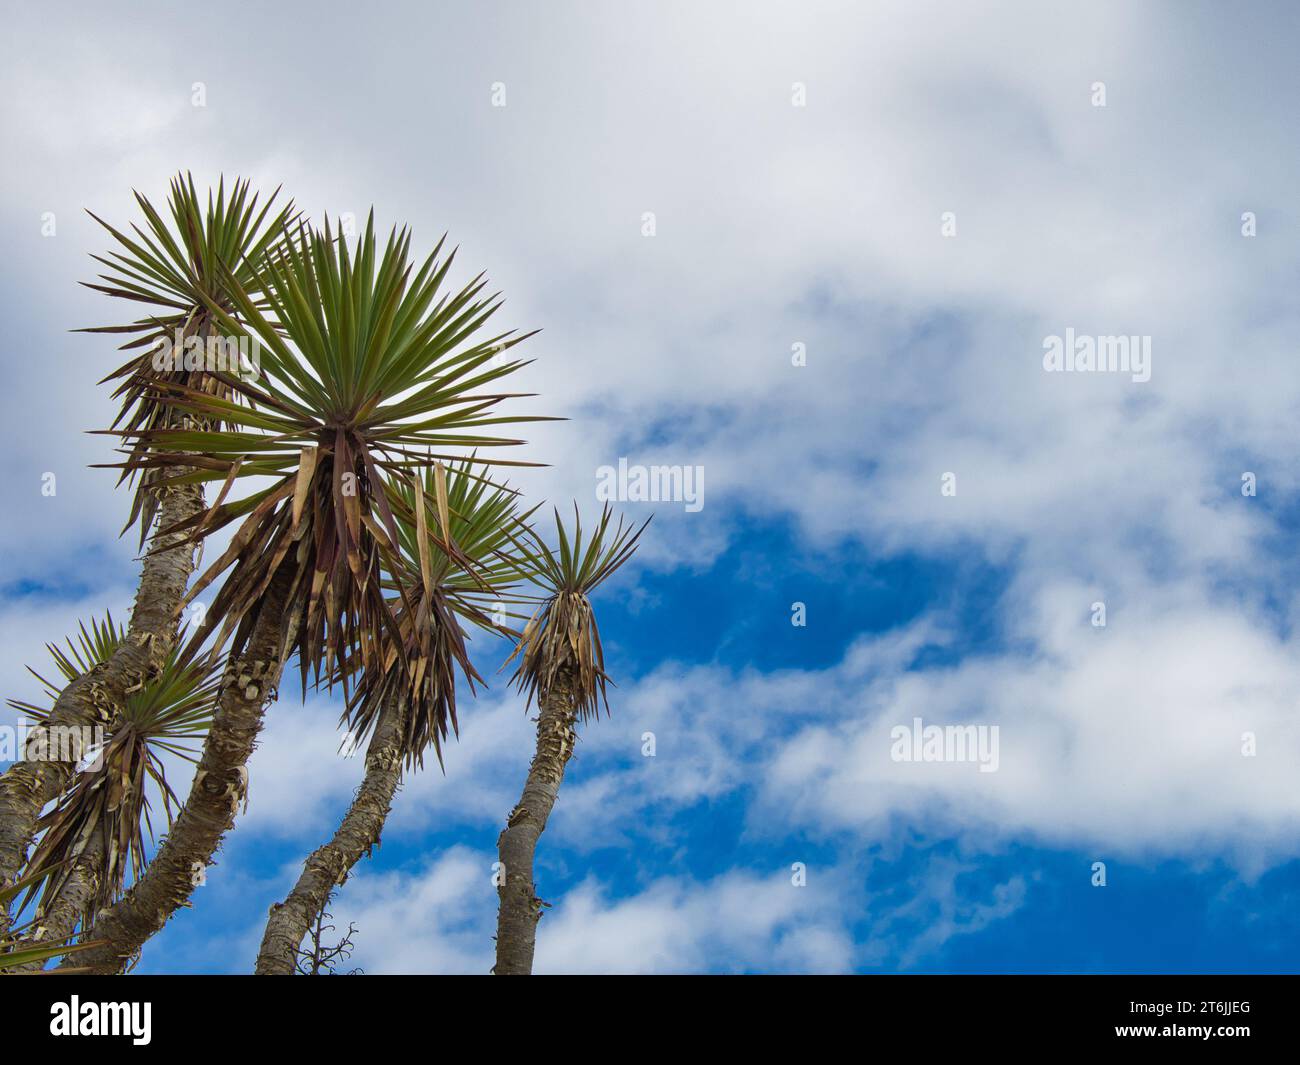 Plante cactus s'élevant dans le ciel bleu chargé de nuages blancs. Usine à Portimão, Algarve, Portugal. Banque D'Images